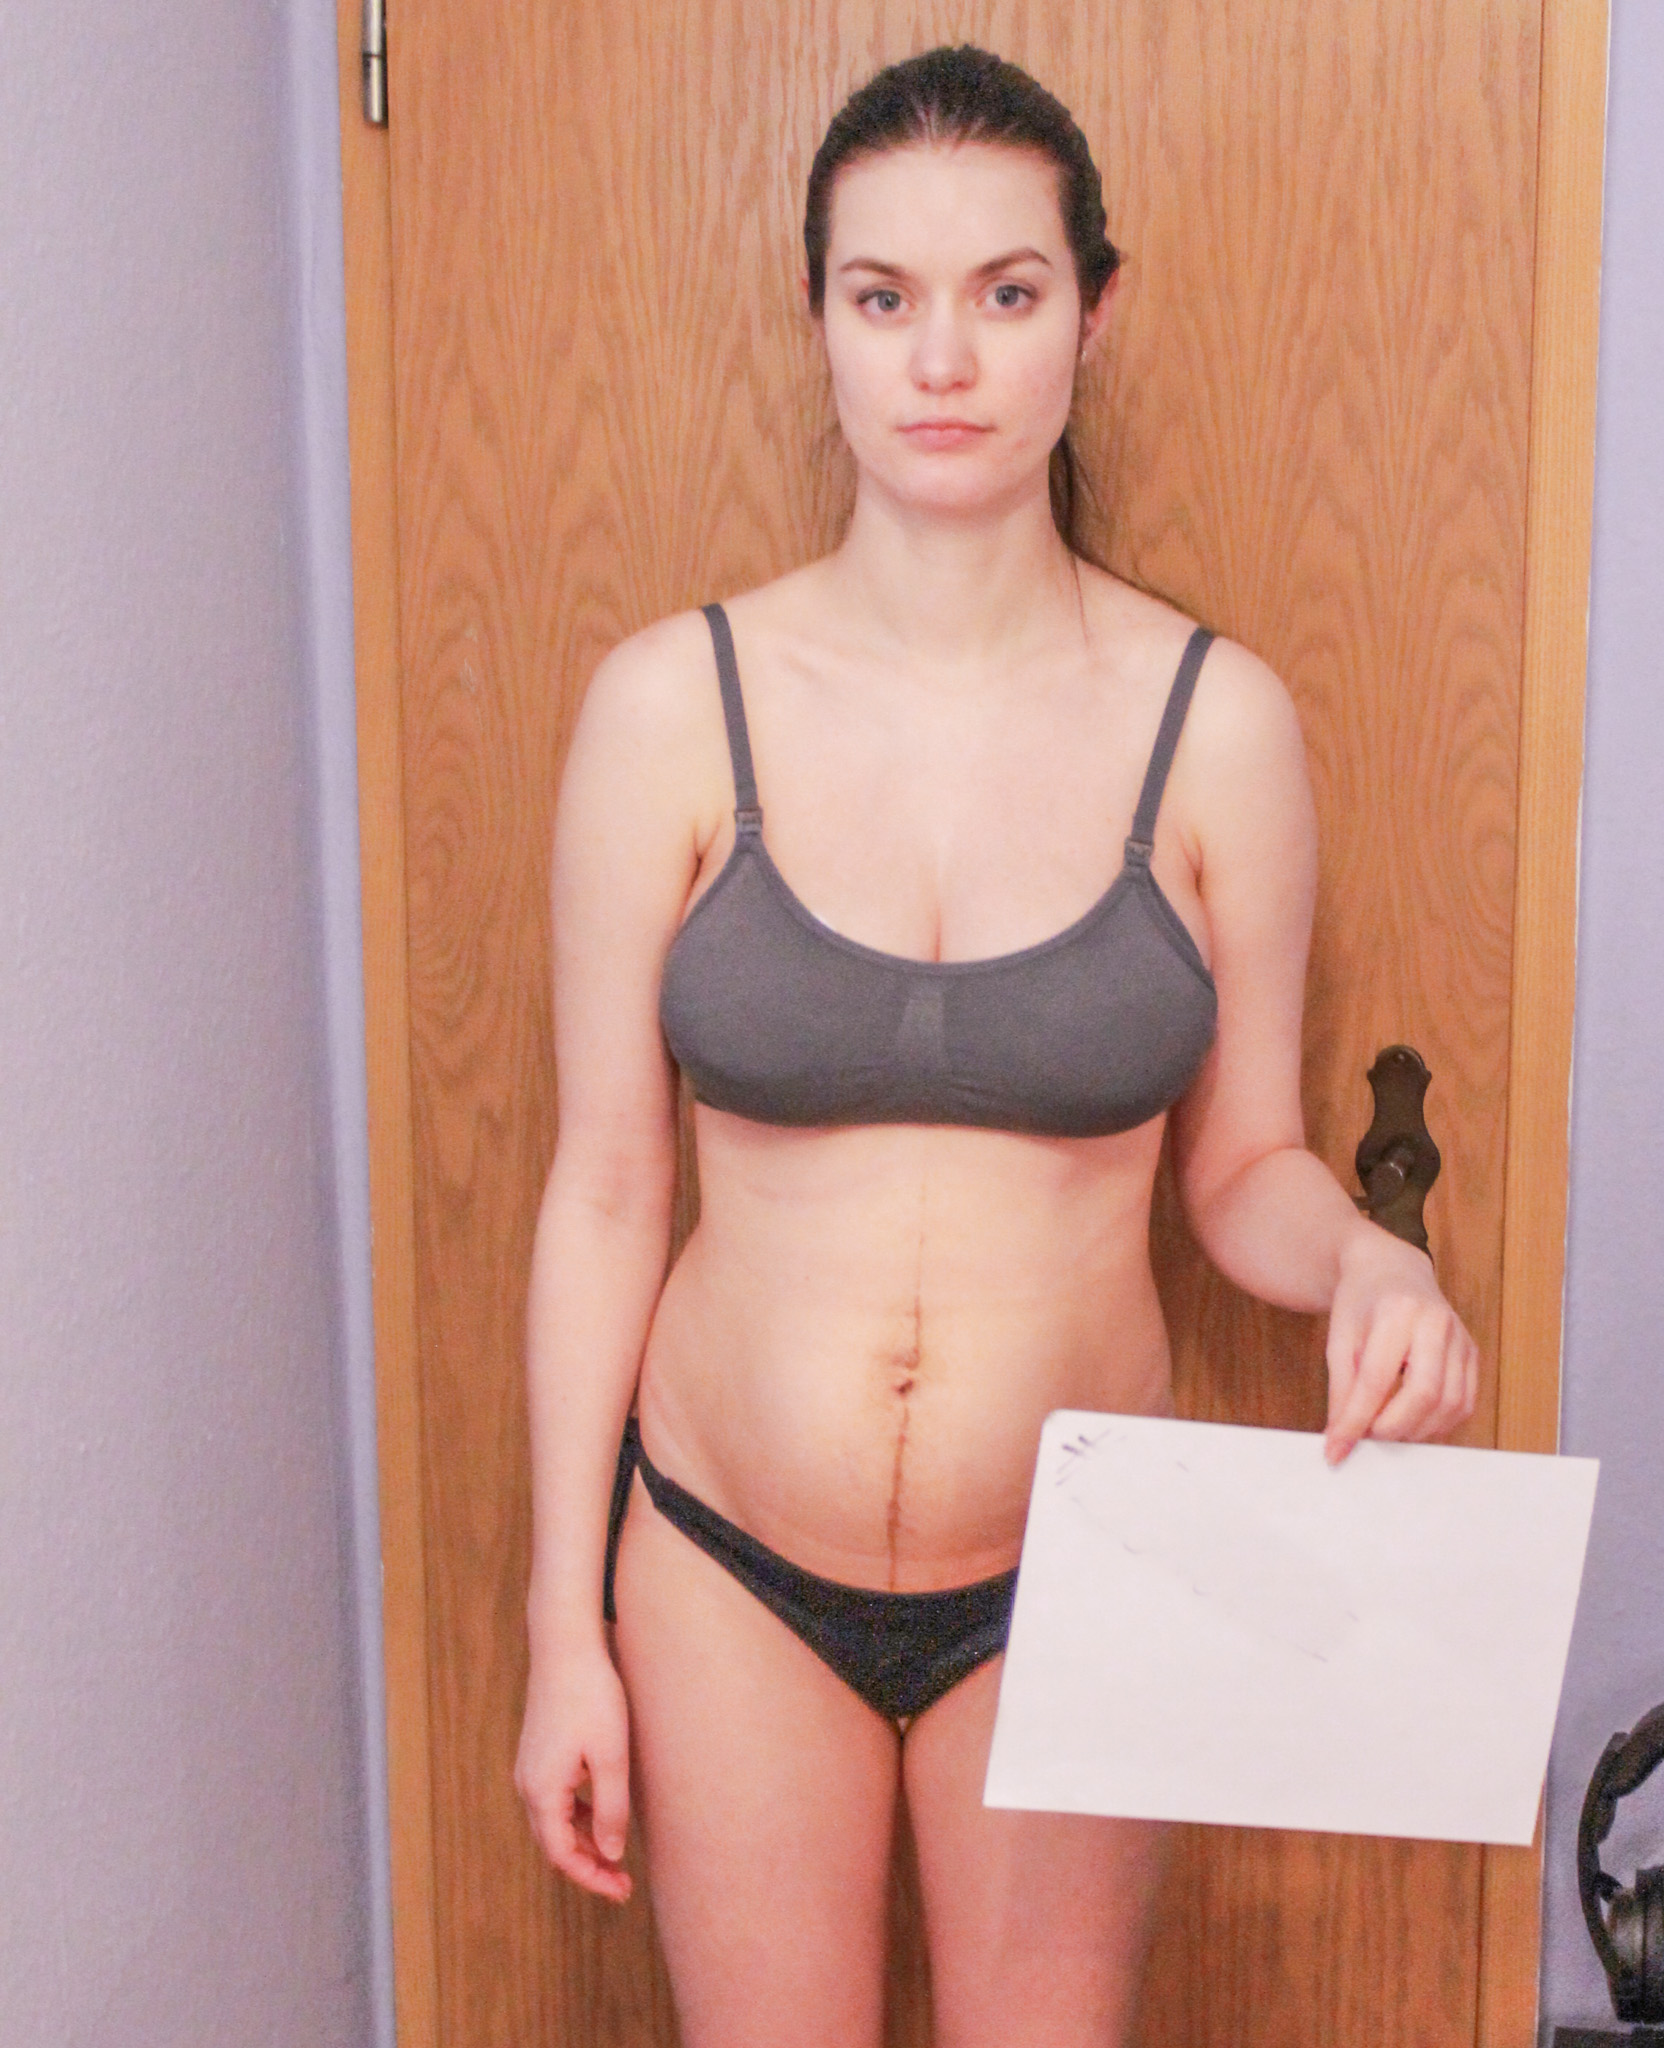 Elena Biedert at two months postpartum